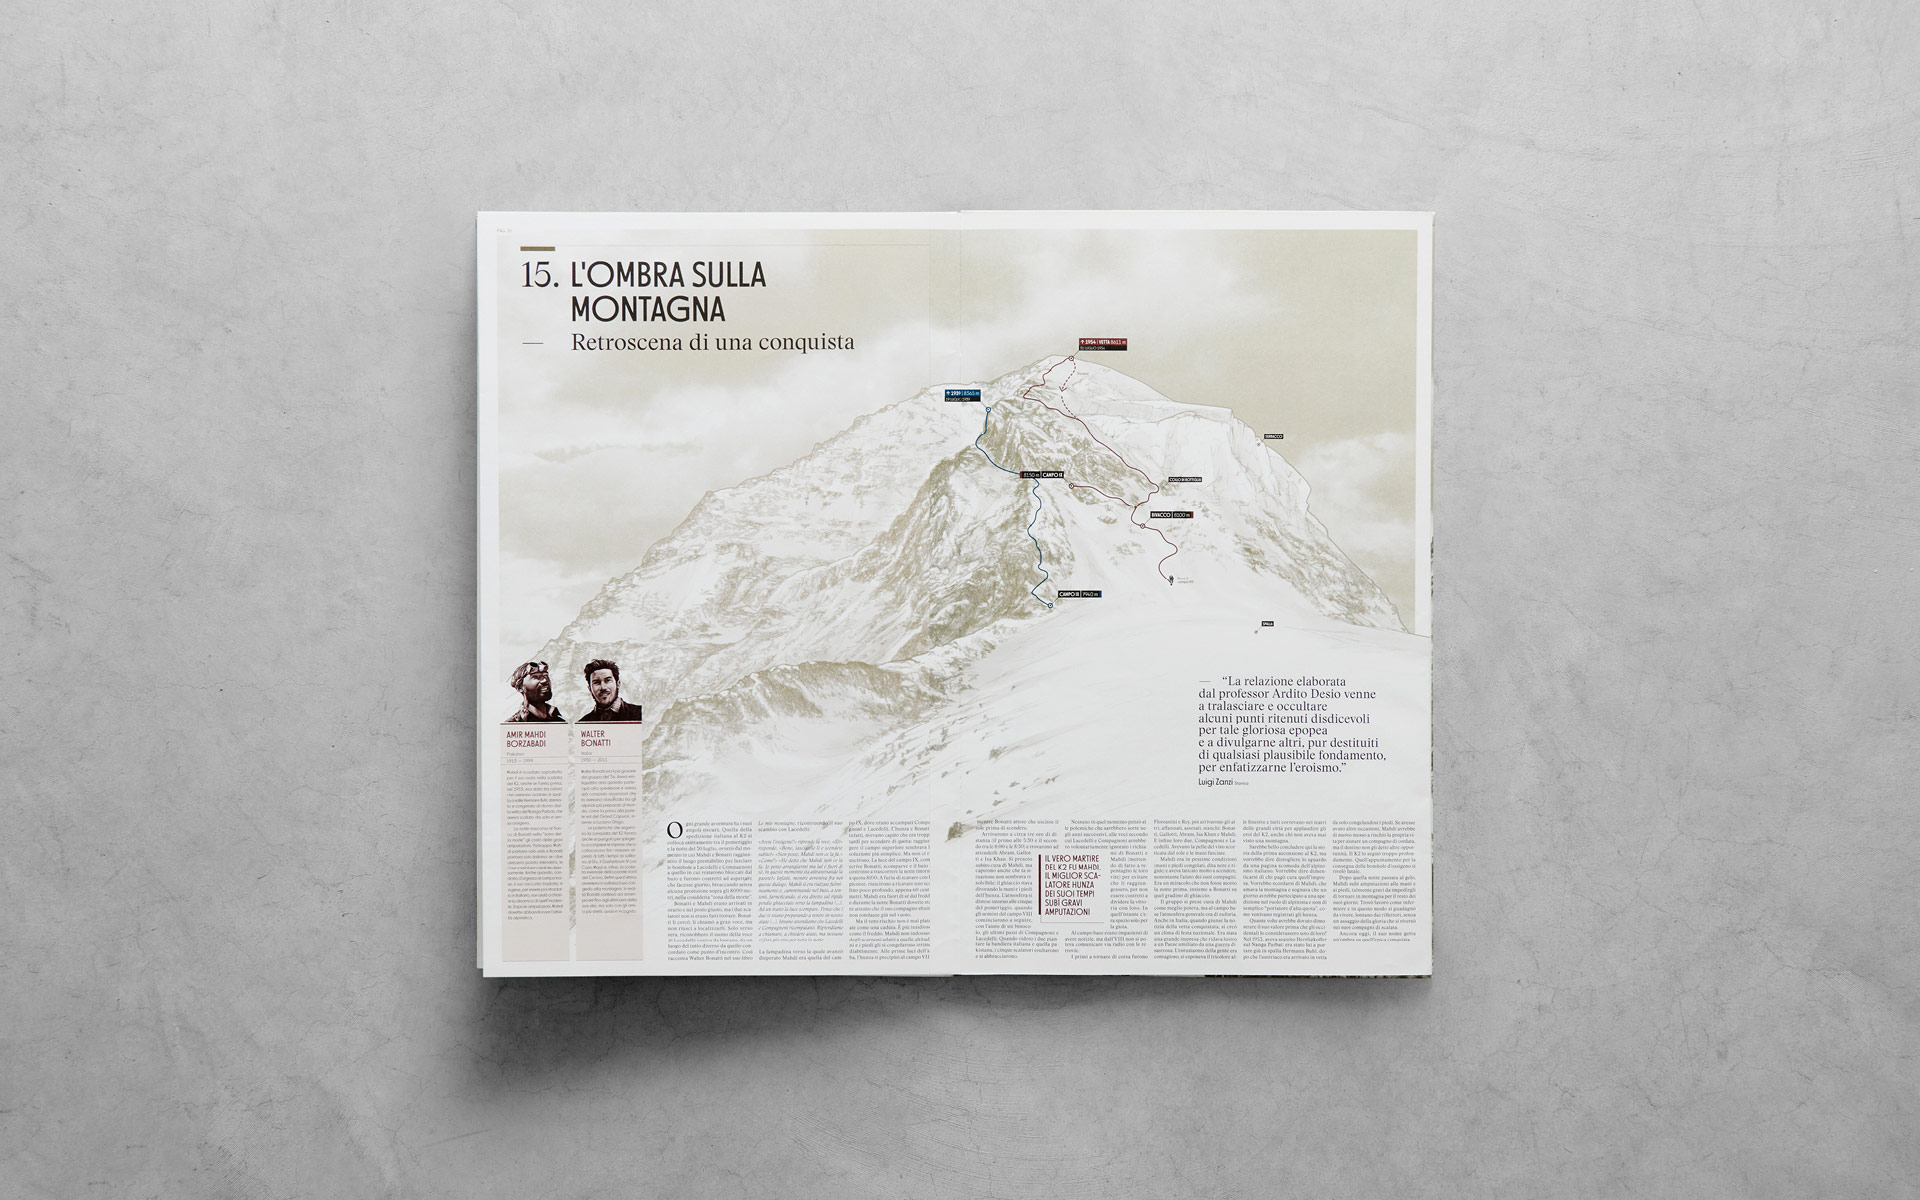 Anteprima delle pagine interne del libro 'K2 Storia della Montagna Impossibile' pubblicato da Rizzoli Lizard